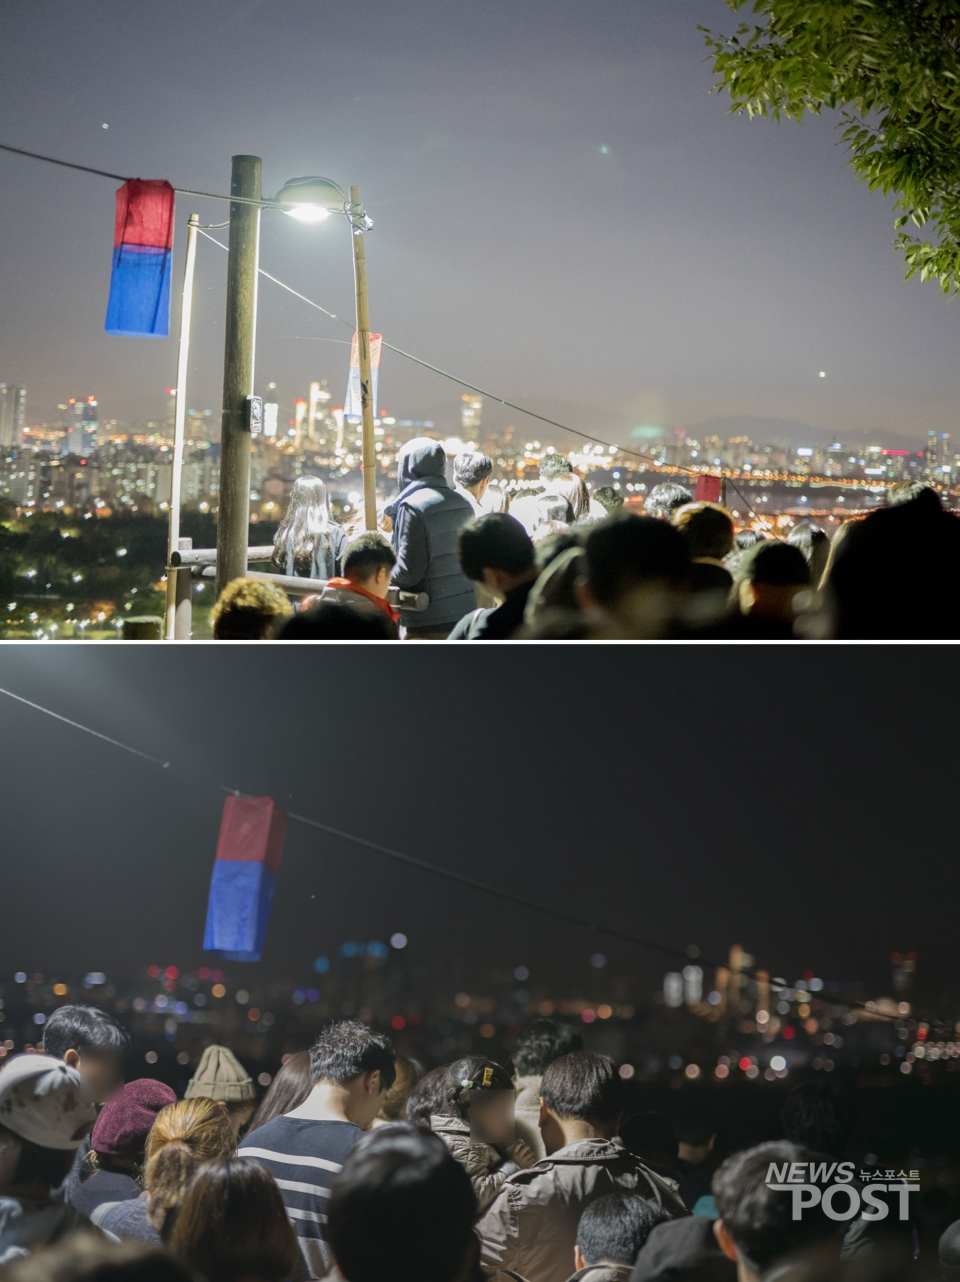 20일 서울 마포구 월드컵공원 내 하늘공원을 내려가기 위해 몰린 인파들. 한 시간 가량 걸어 계단 입구에 도착하자 보이는 가로등. 나무 난간이 전부인 계단에도 많은 인파가 몰려있다. (사진=안신혜 기자)